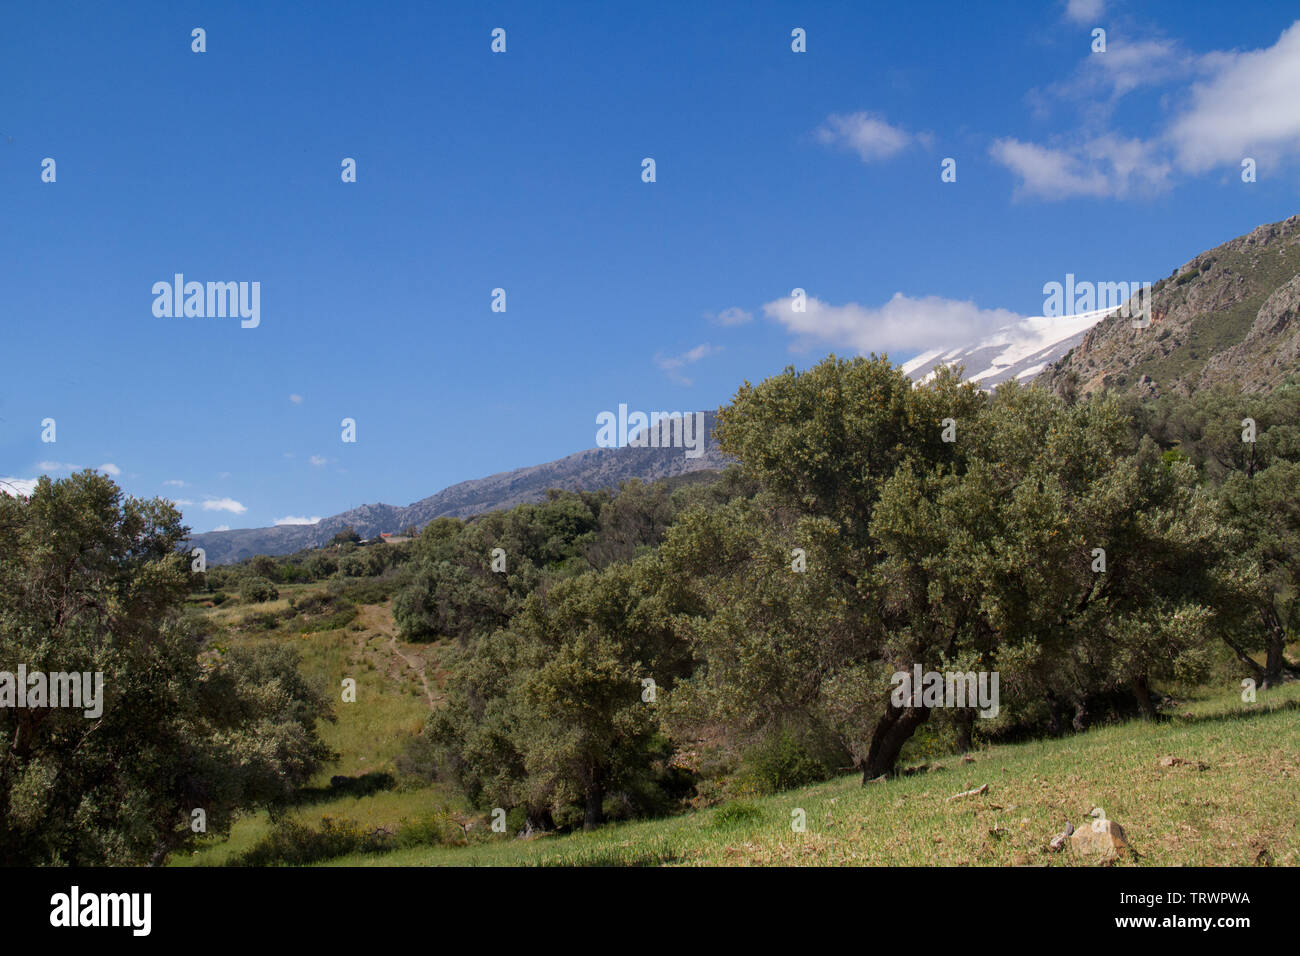 Paesaggio di Creta, Grecia: vista su un frutteto di oliva, nella distanza una coperta di neve montagna Foto Stock